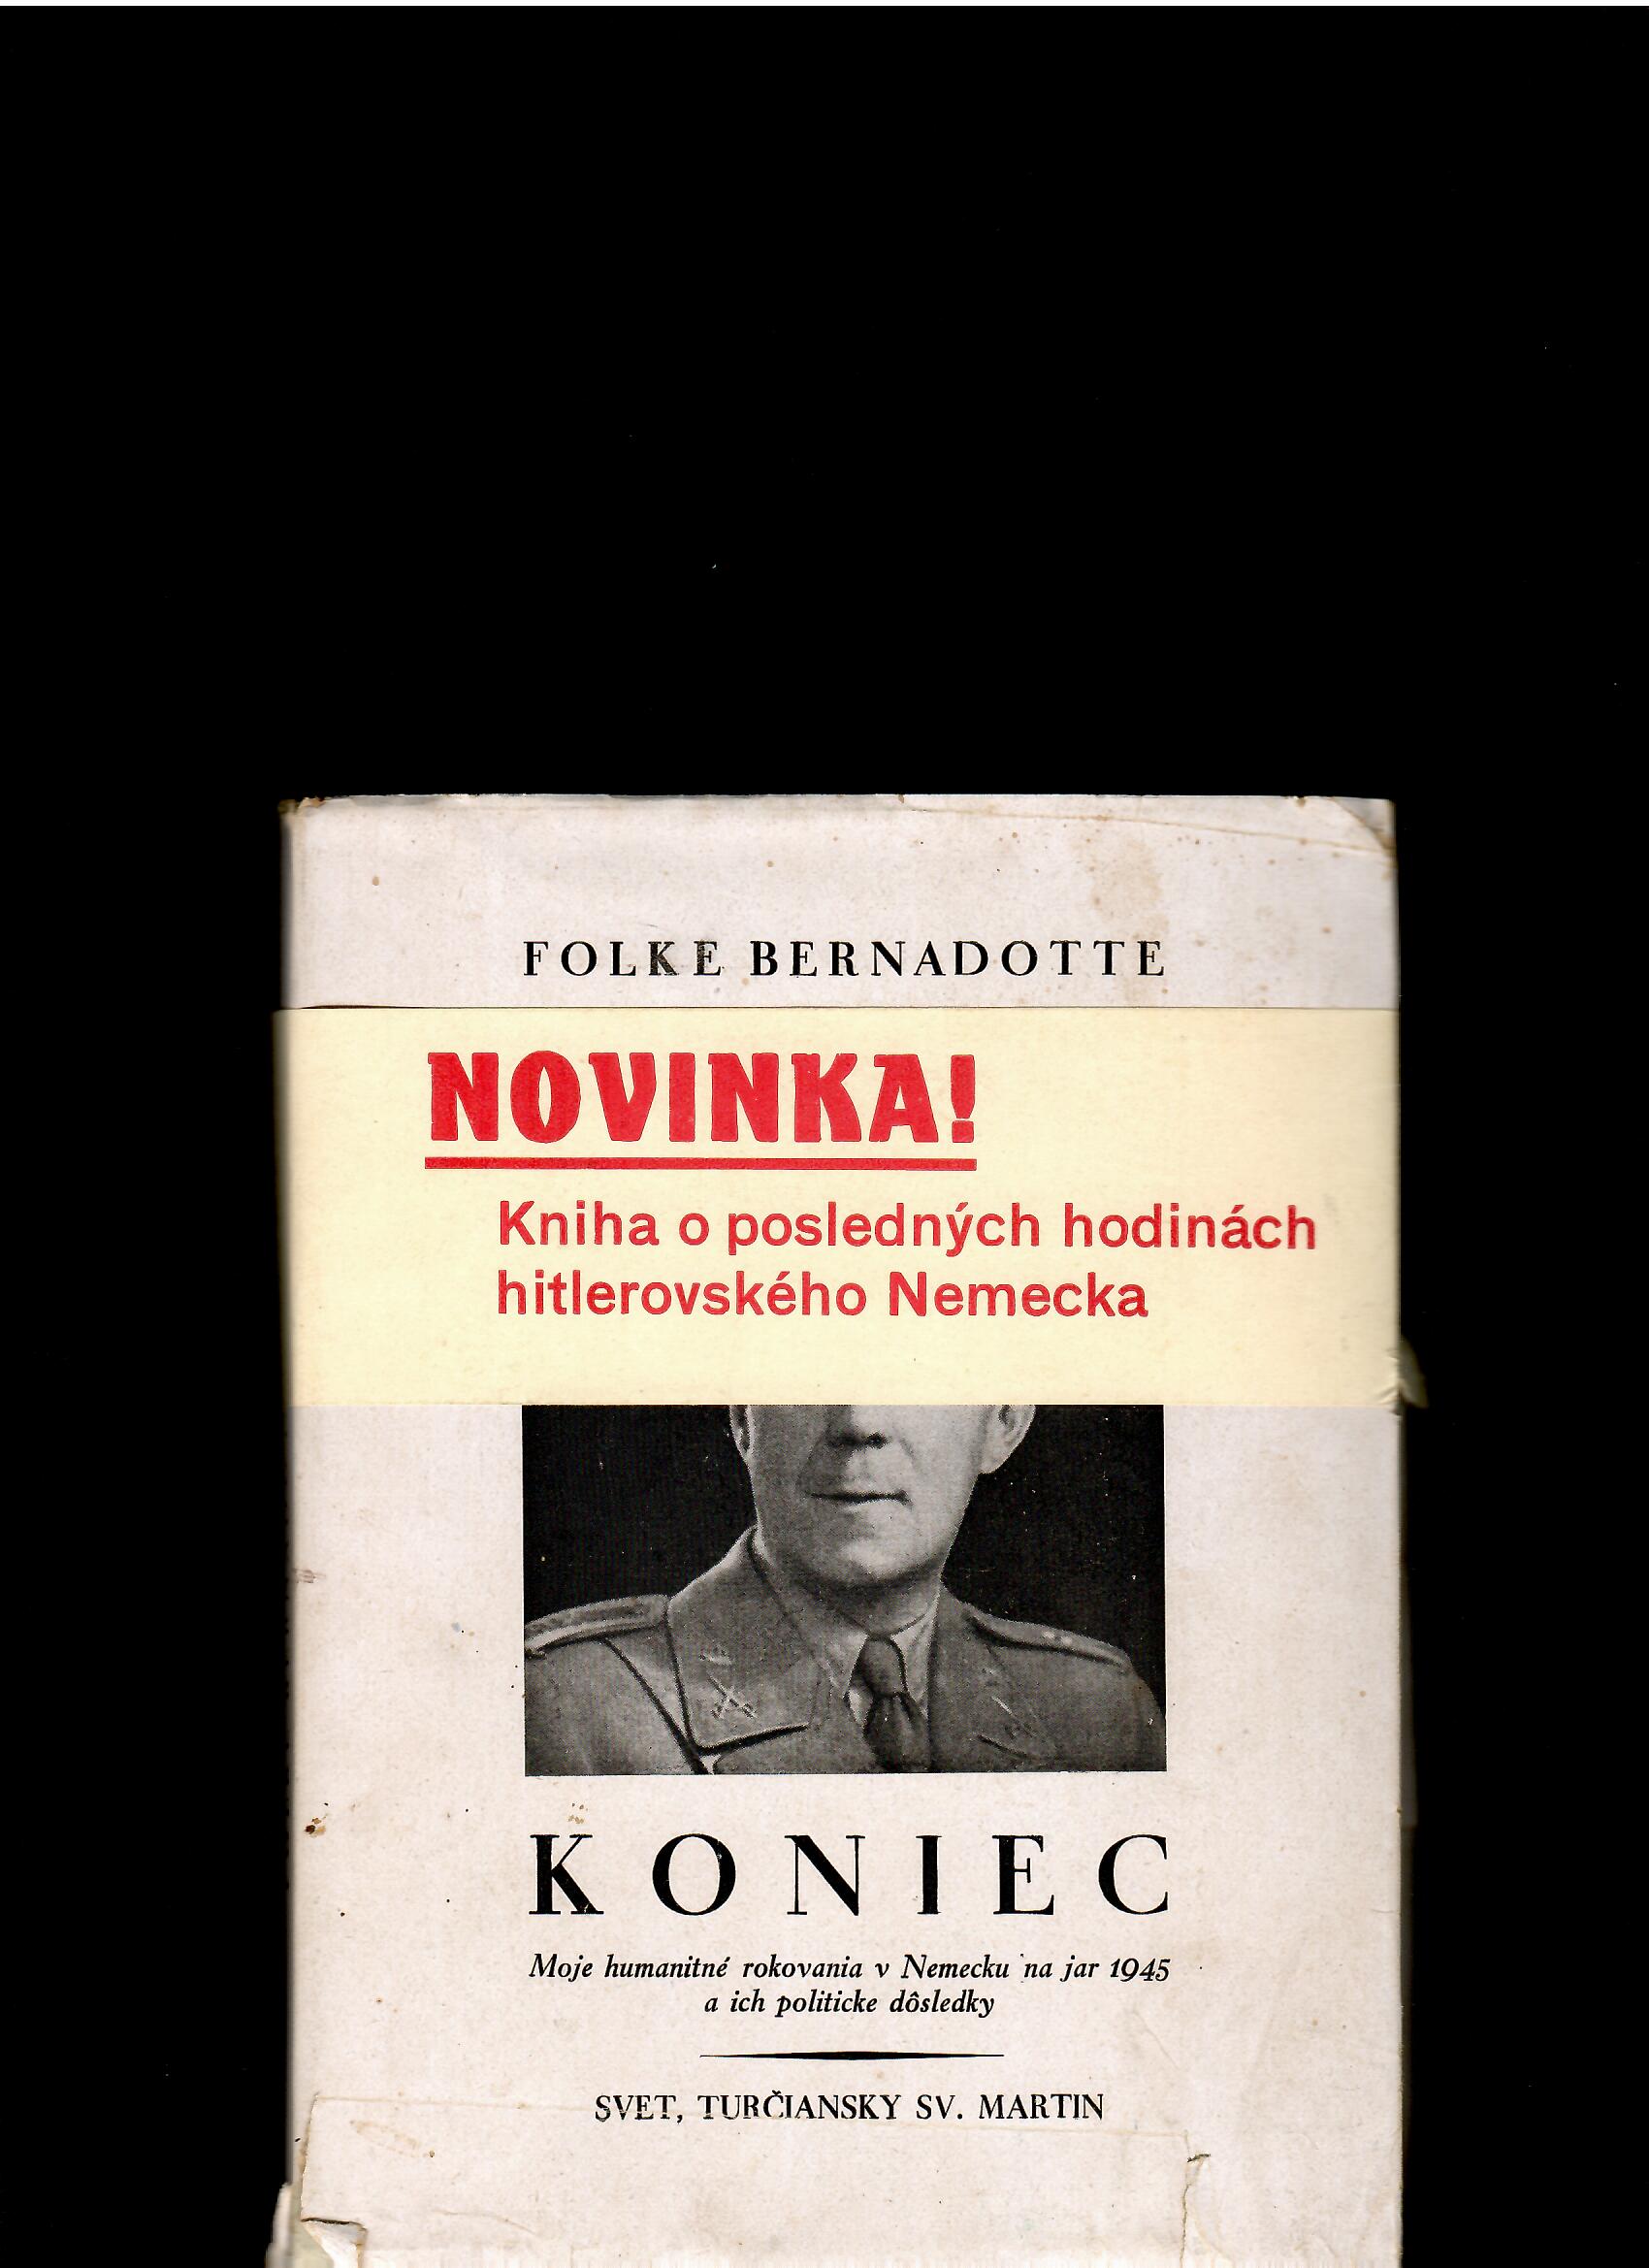 Folke Bernadotte: Koniec /1946/